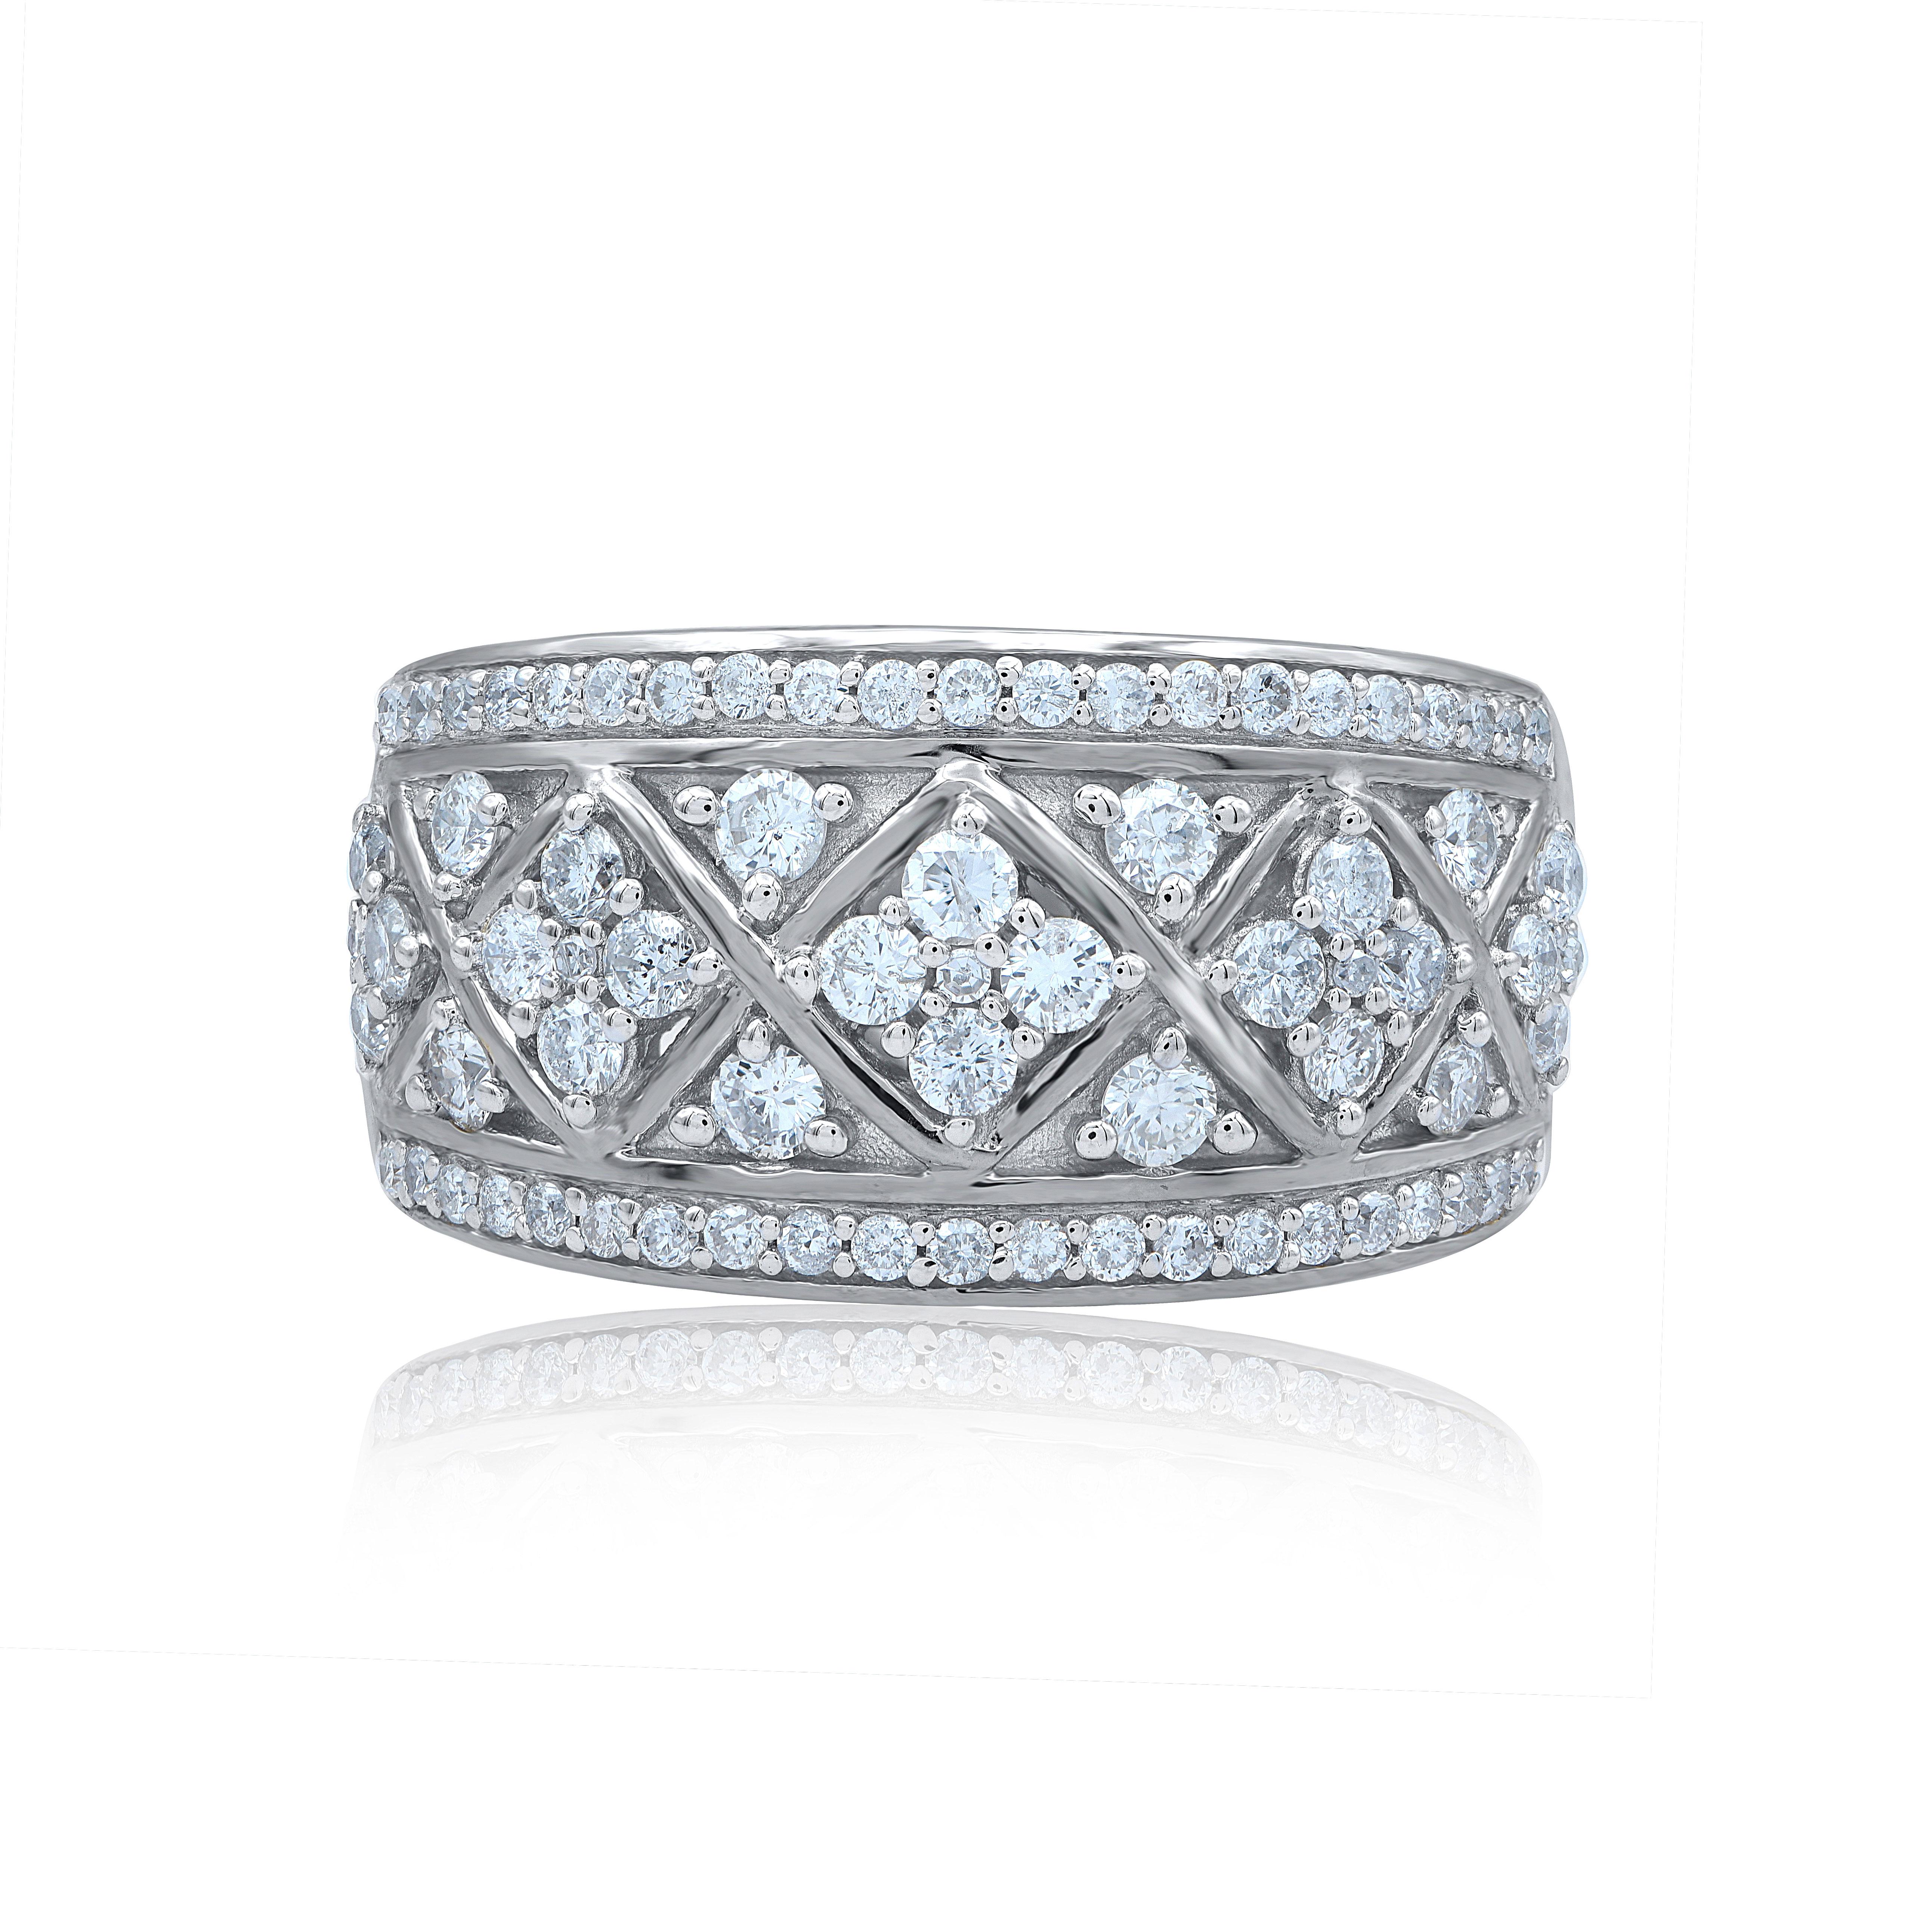 Verleihen Sie Ihrer Schmucksammlung einen Hauch von Glamour mit diesem diamantenen Verlobungsring. Dieser wunderschöne Ring ist mit schimmernden Diamanten im Brillantschliff und im Einzelschliff in Zacken- und Pflasterfassung besetzt. Gefertigt aus